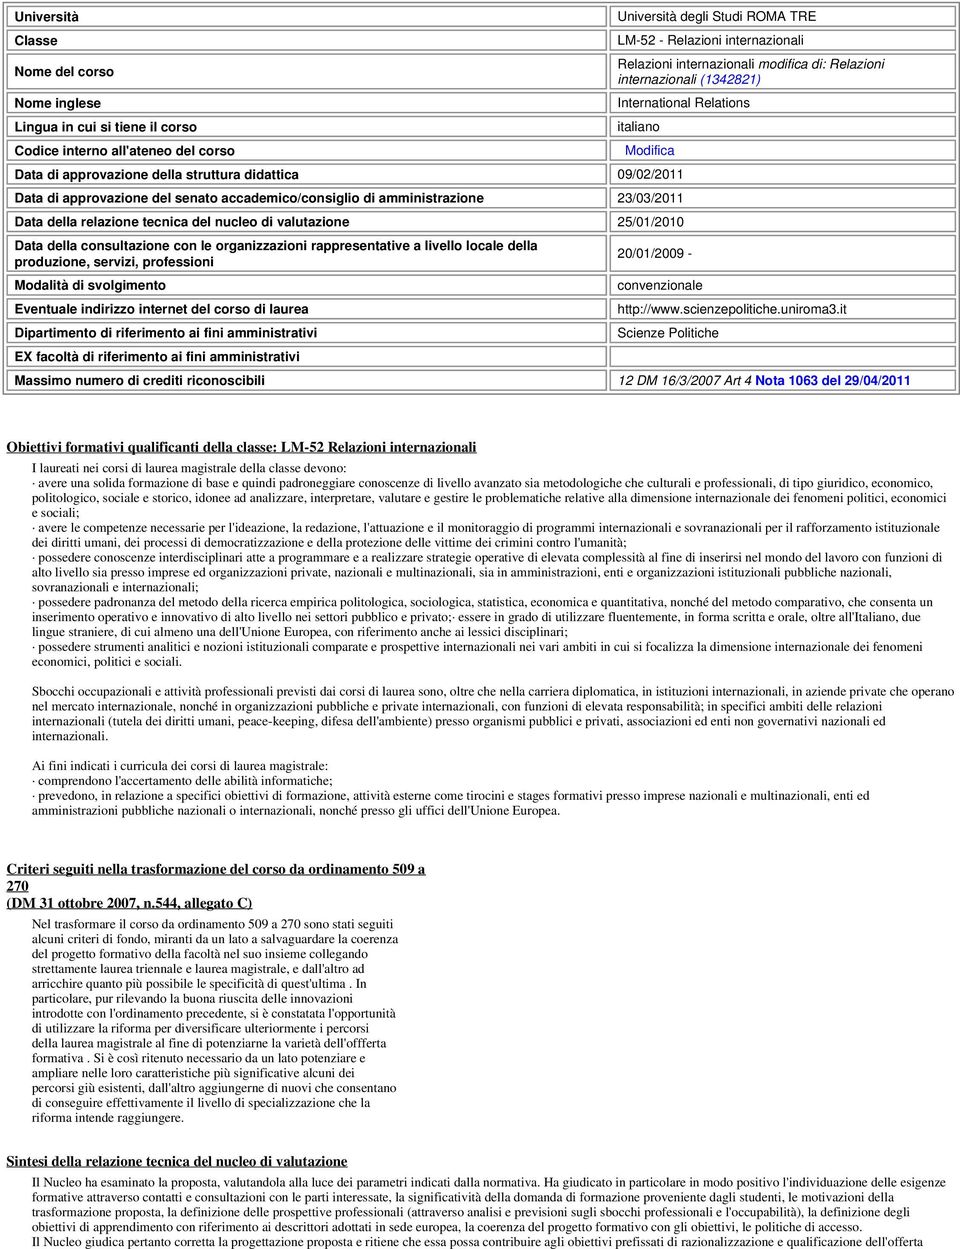 accademico/consiglio di amministrazione 23/03/2011 Data della relazione tecnica del nucleo di valutazione 25/01/2010 Data della consultazione con le organizzazioni rappresentative a livello locale